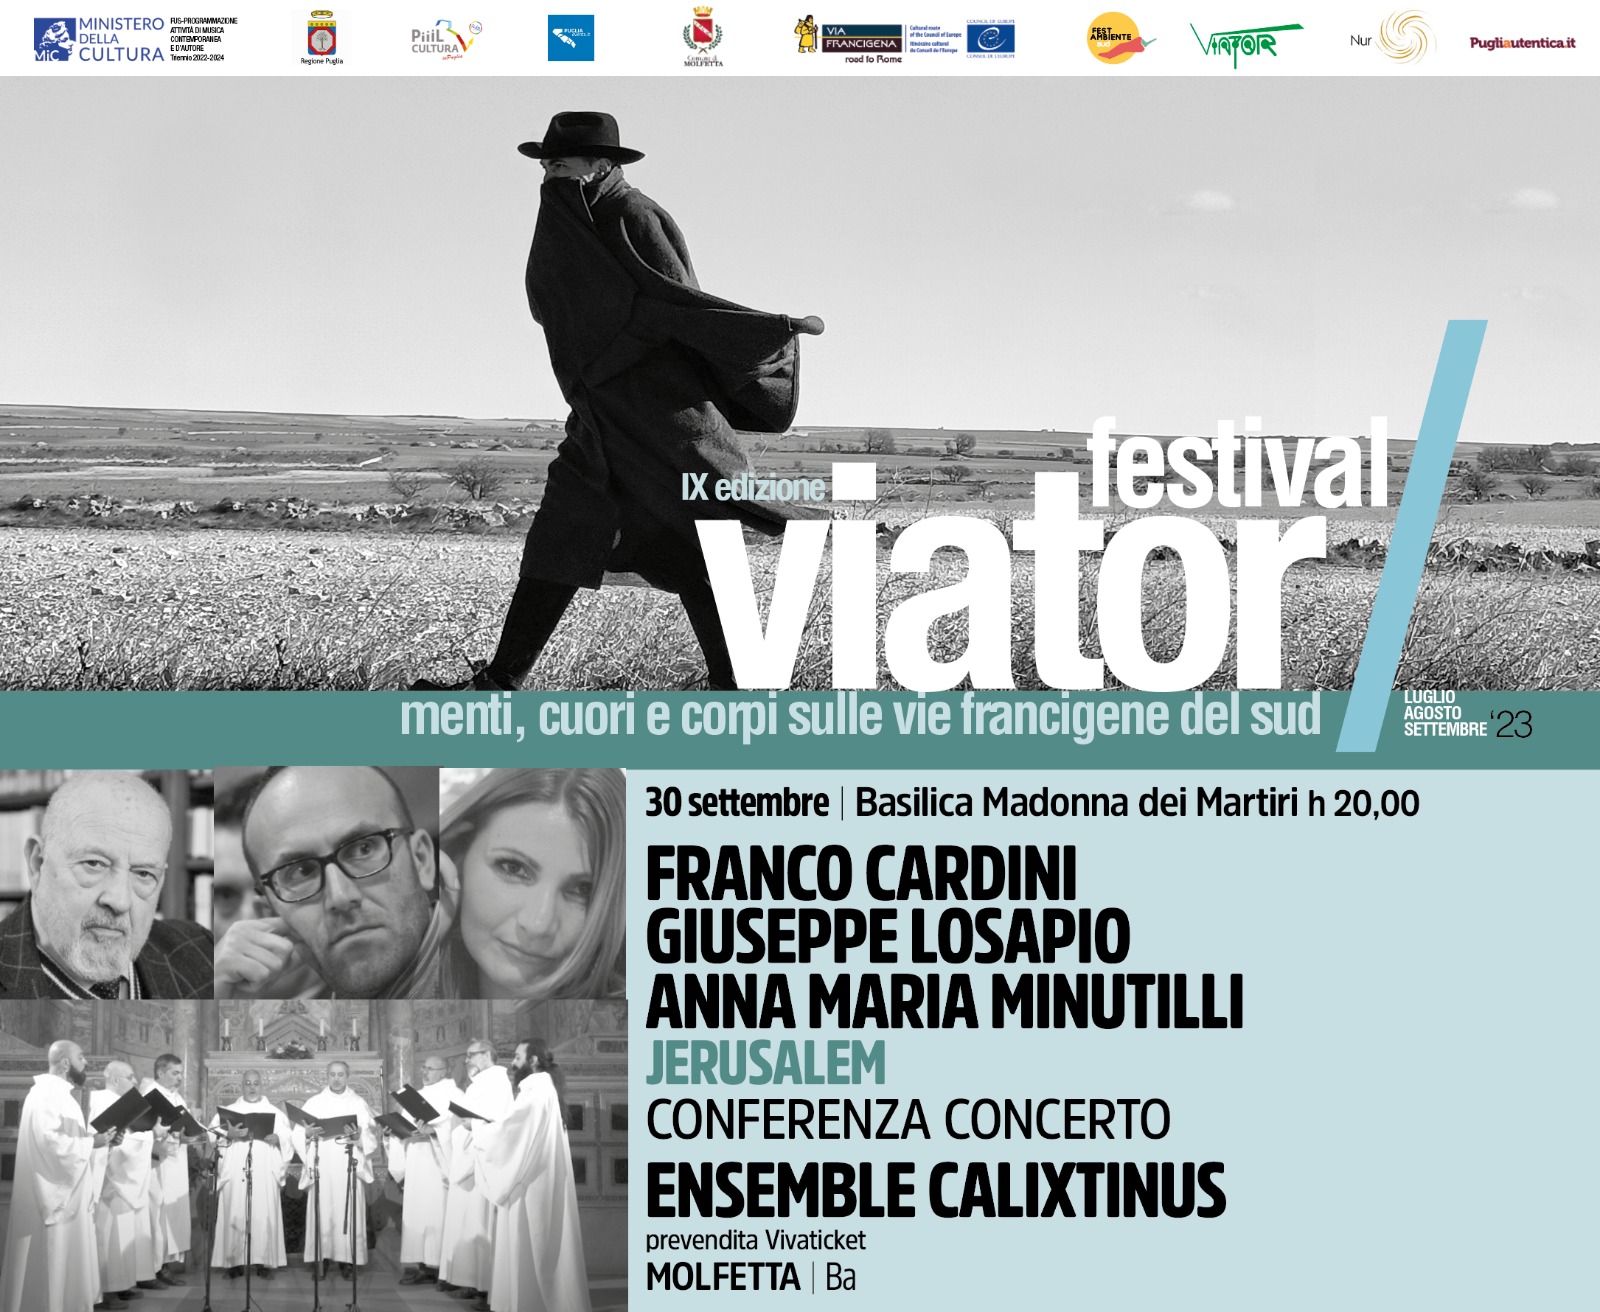 Festival Viator, 